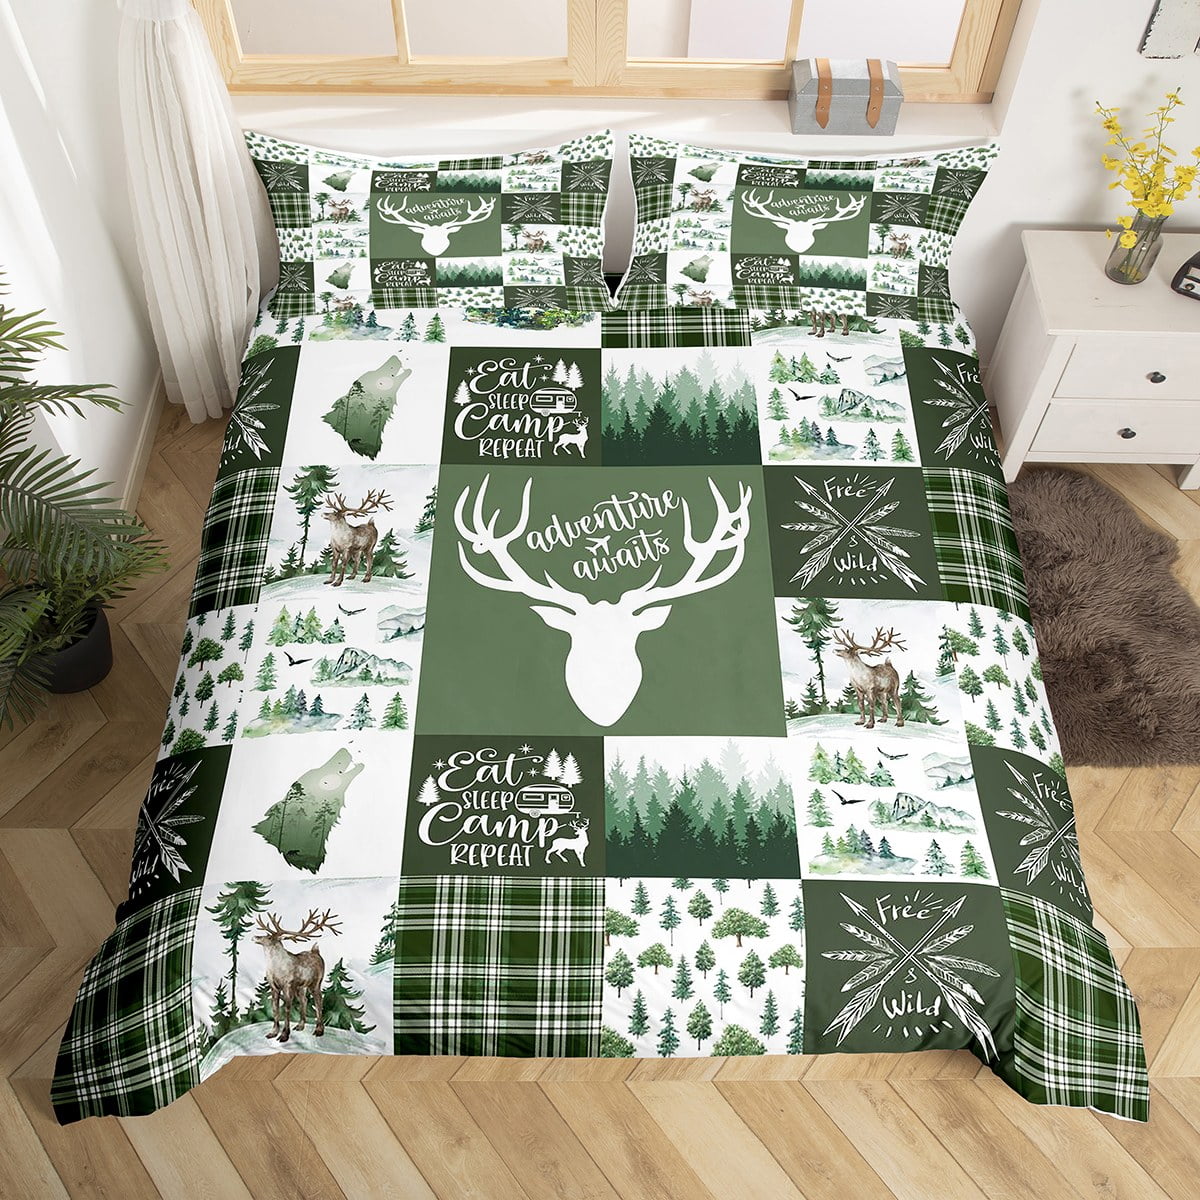 Handmade Deer Hide Bed Cover : r/ATBGE